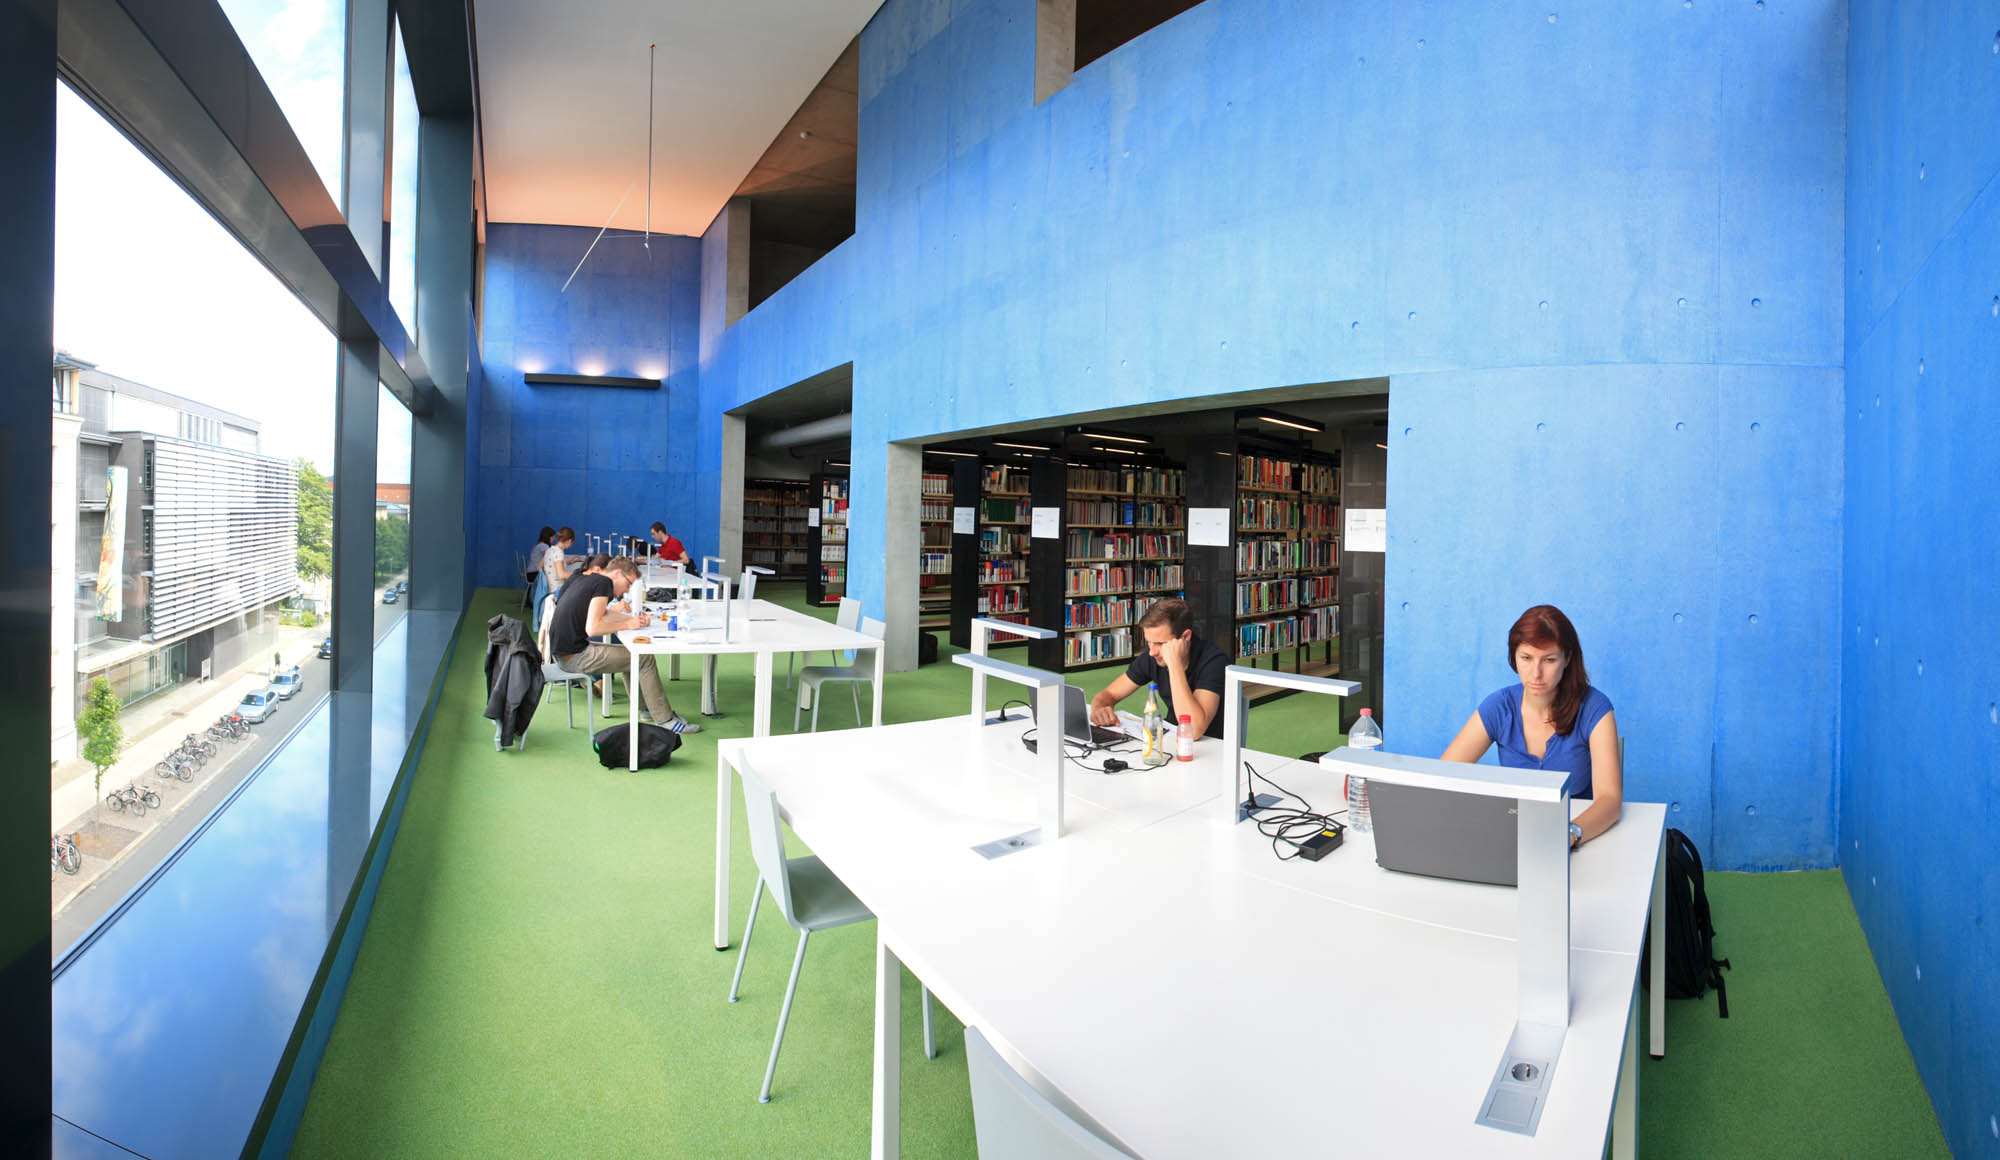 In der Hochschulbibliothek der HTWK Leipzig sitzen mehrere Studenten am Schreibtisch und arbeiten am Laoptop. Im Hintergrund sieht man Bücherregale.